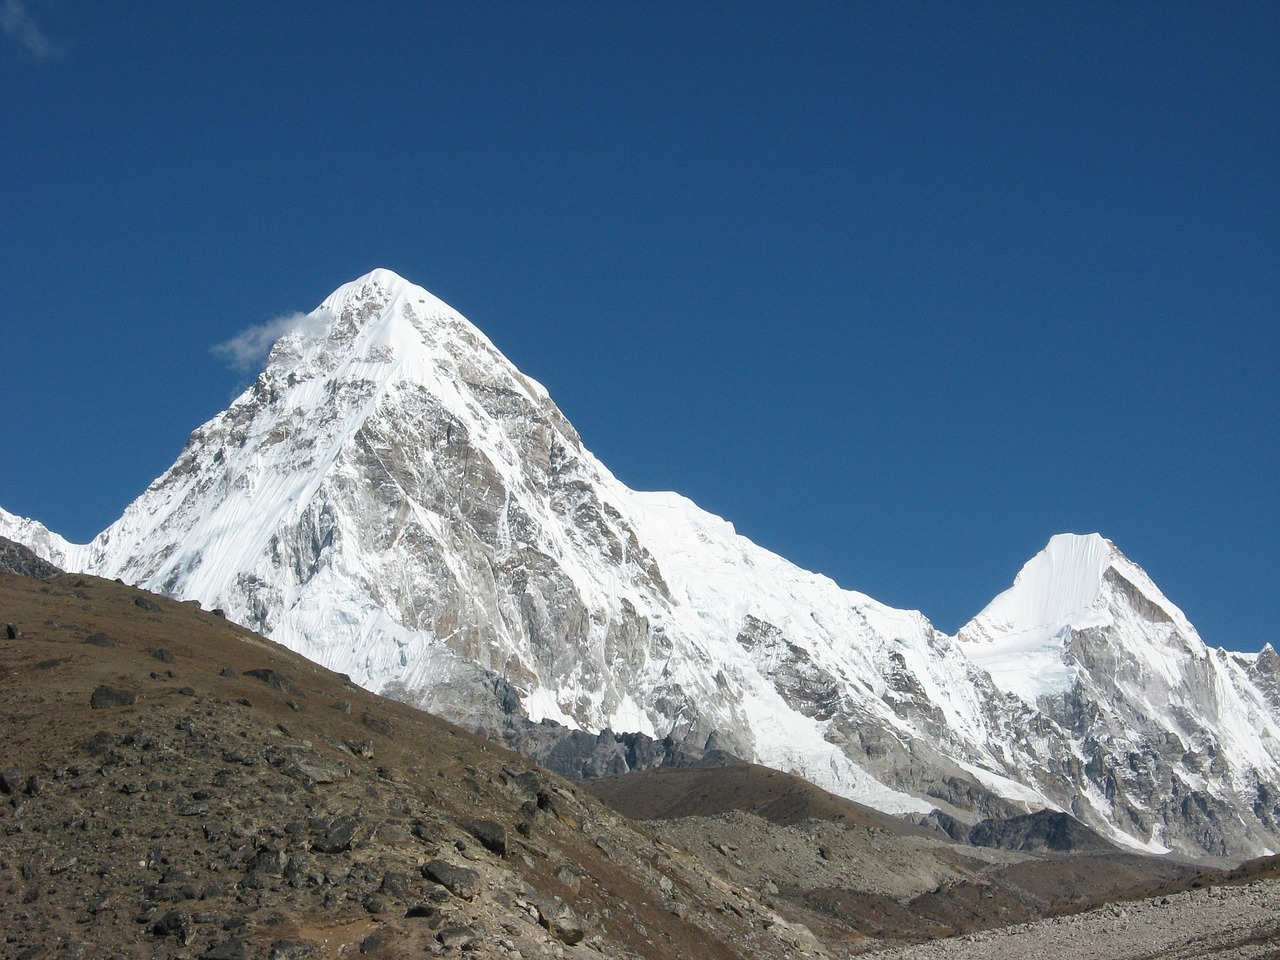 النيبال